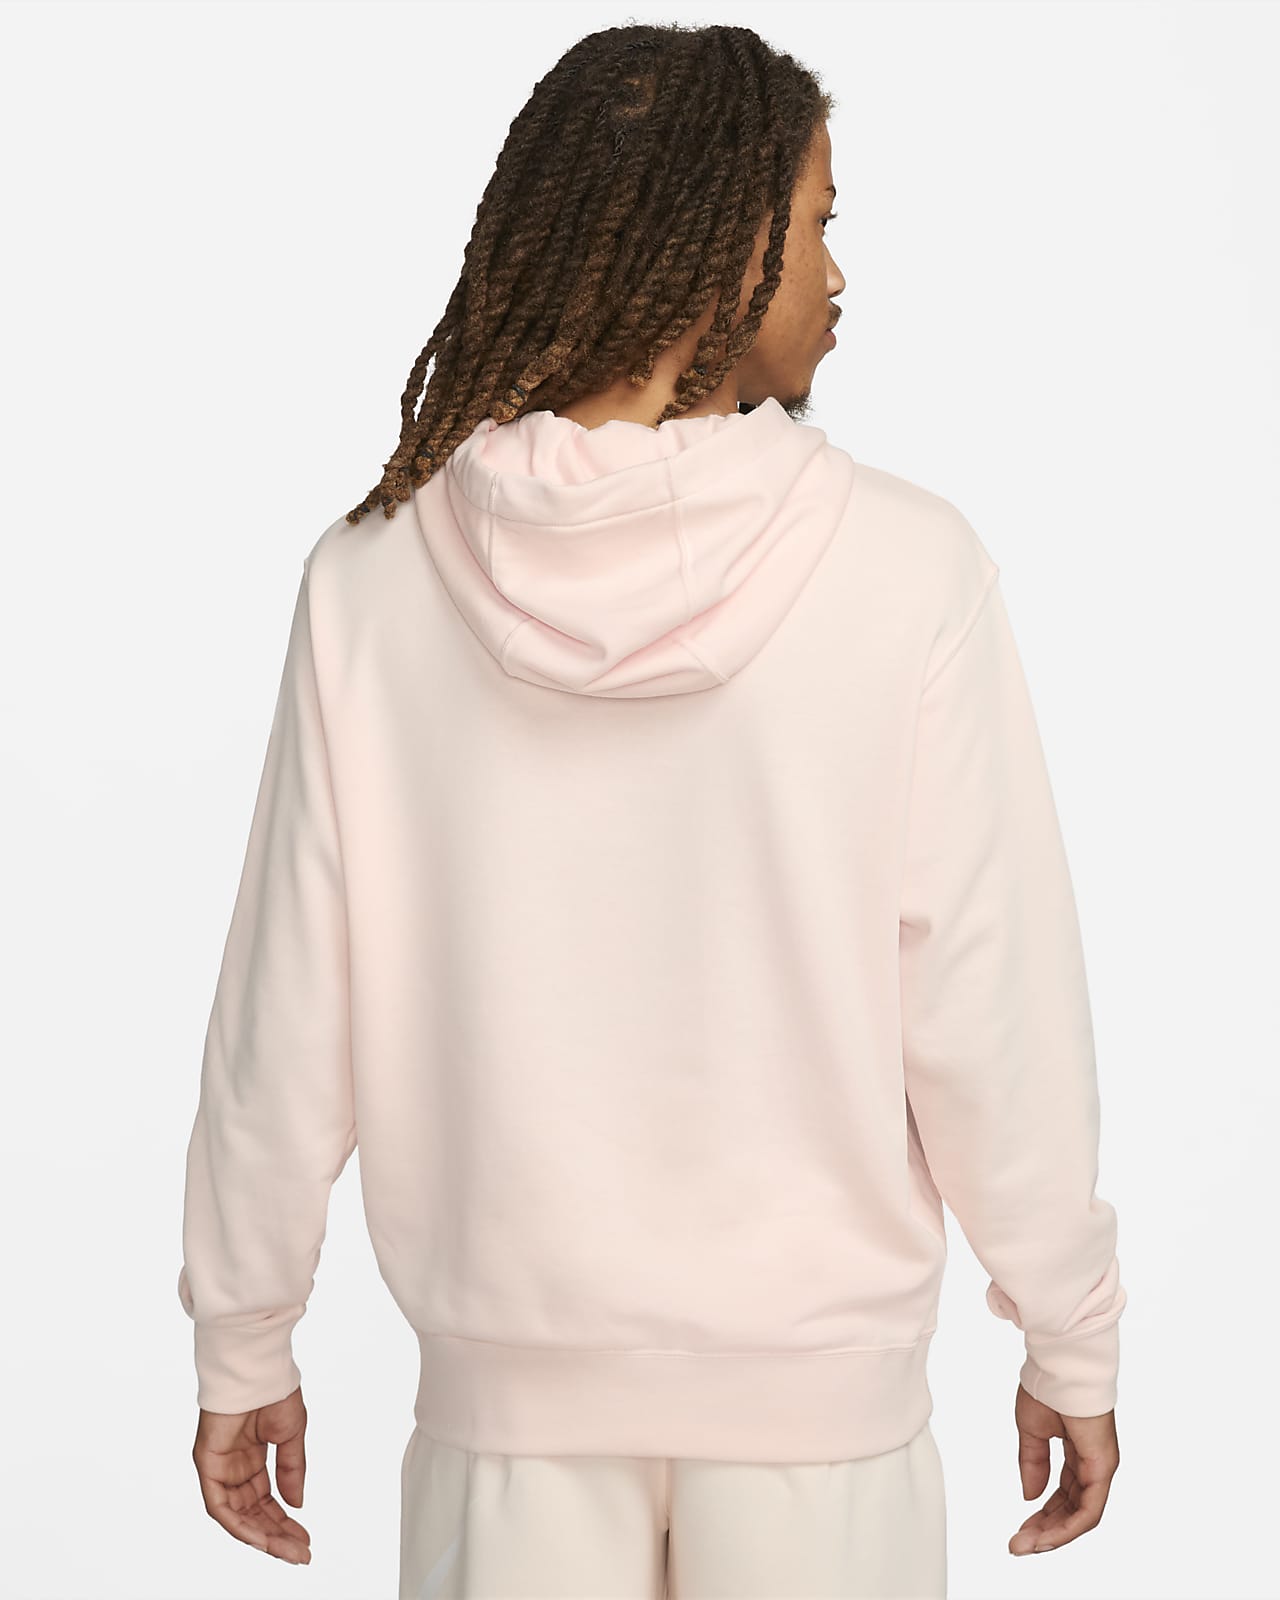 EXCLUSIVE NIKE LIGHTNING HOODIE - ROBLOX  Camisa com capuz, Orelhas de  gato, Nike blusão